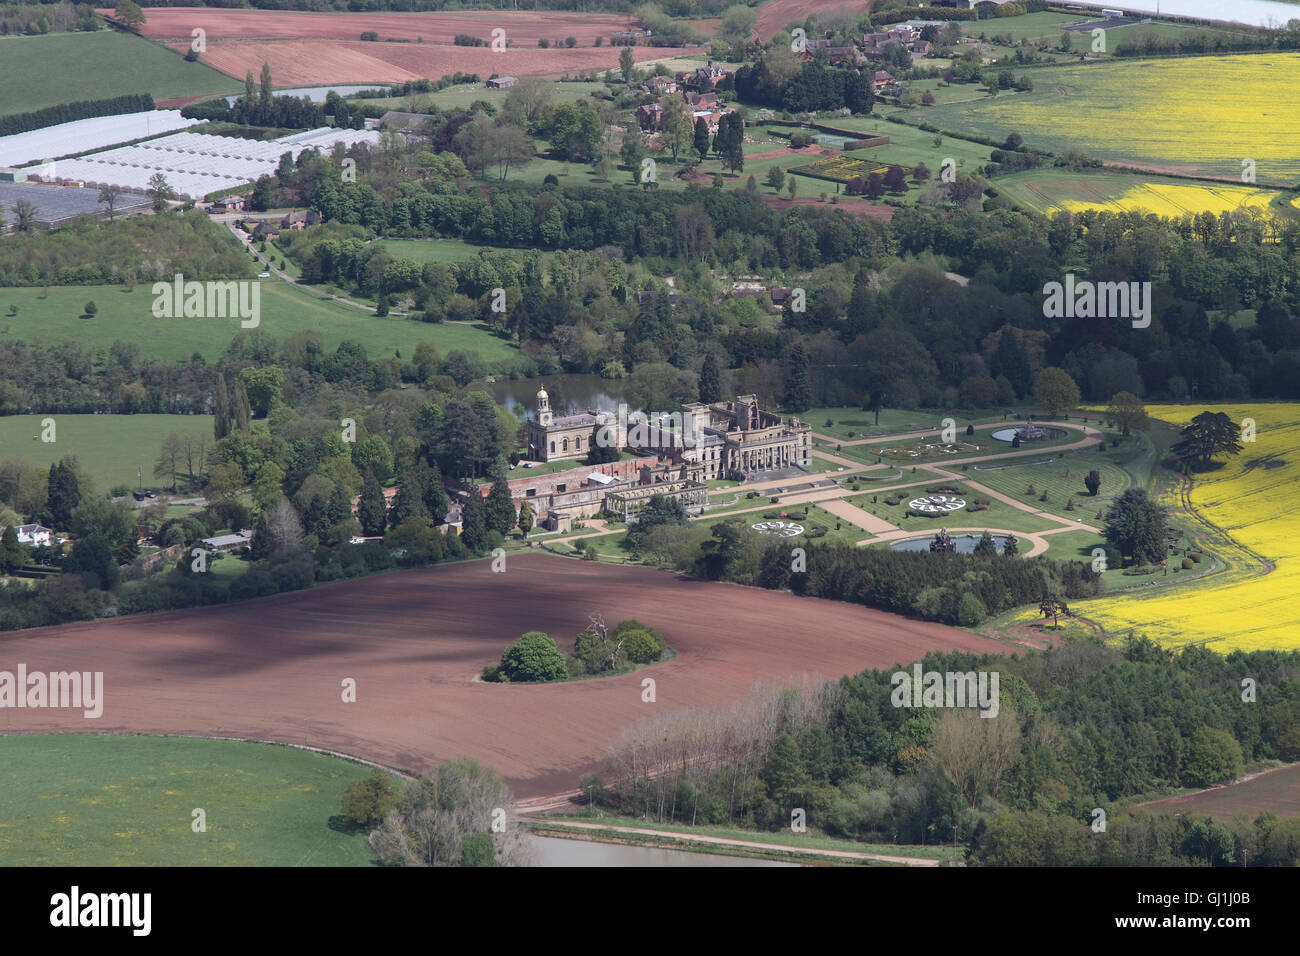 Vistas aéreas de English Heritage Witley Court y jardines cerca de Great Witley establecido entre los campos de colza amarillos de la campiña Worcesterhire Foto de stock